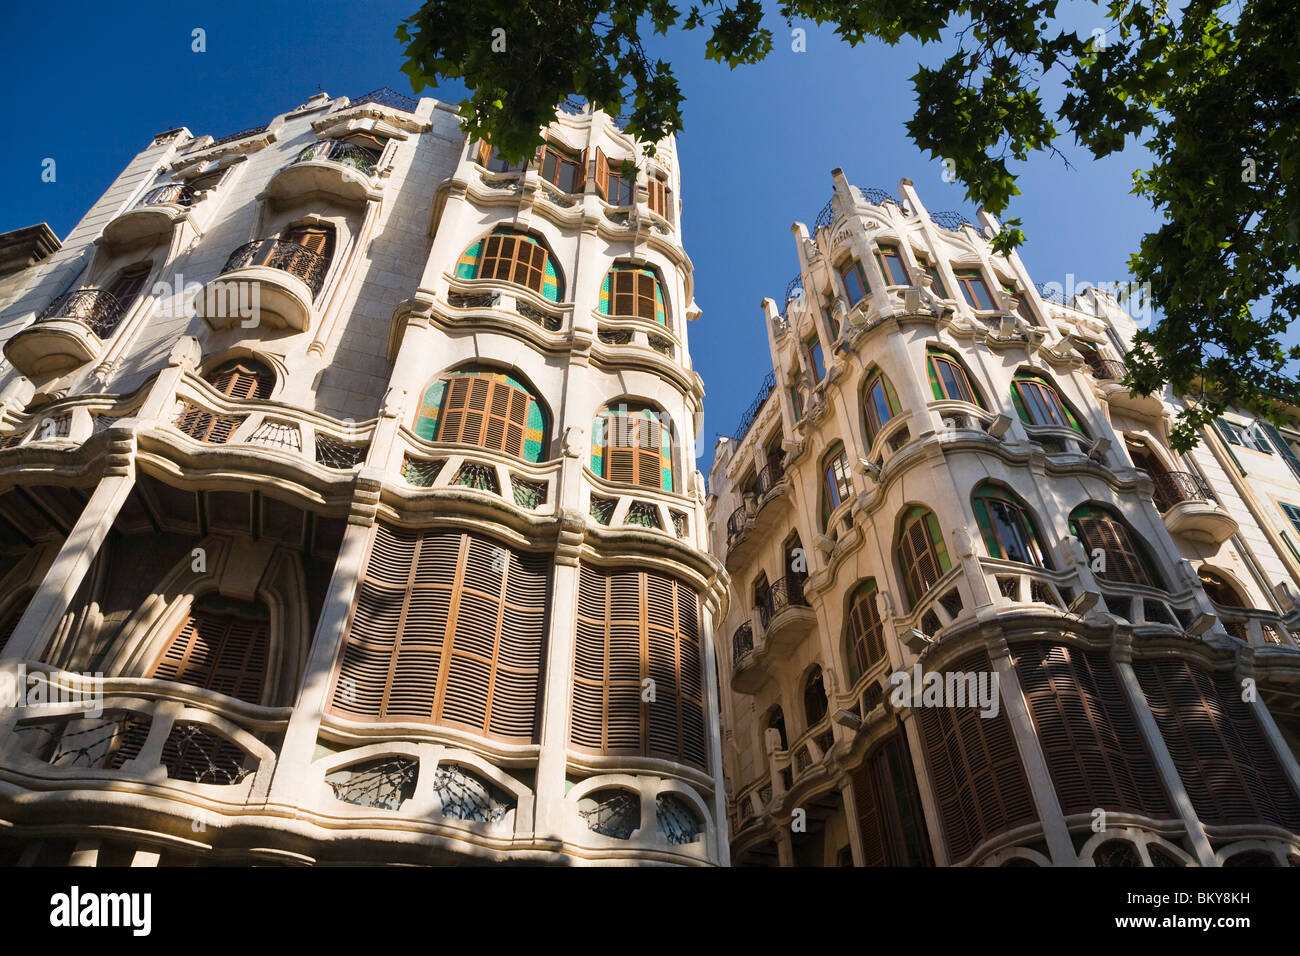 Facciate di case di appartamenti nella luce del sole, Plaça del Mercat, Palma di Mallorca, Spagna, Europa Foto Stock